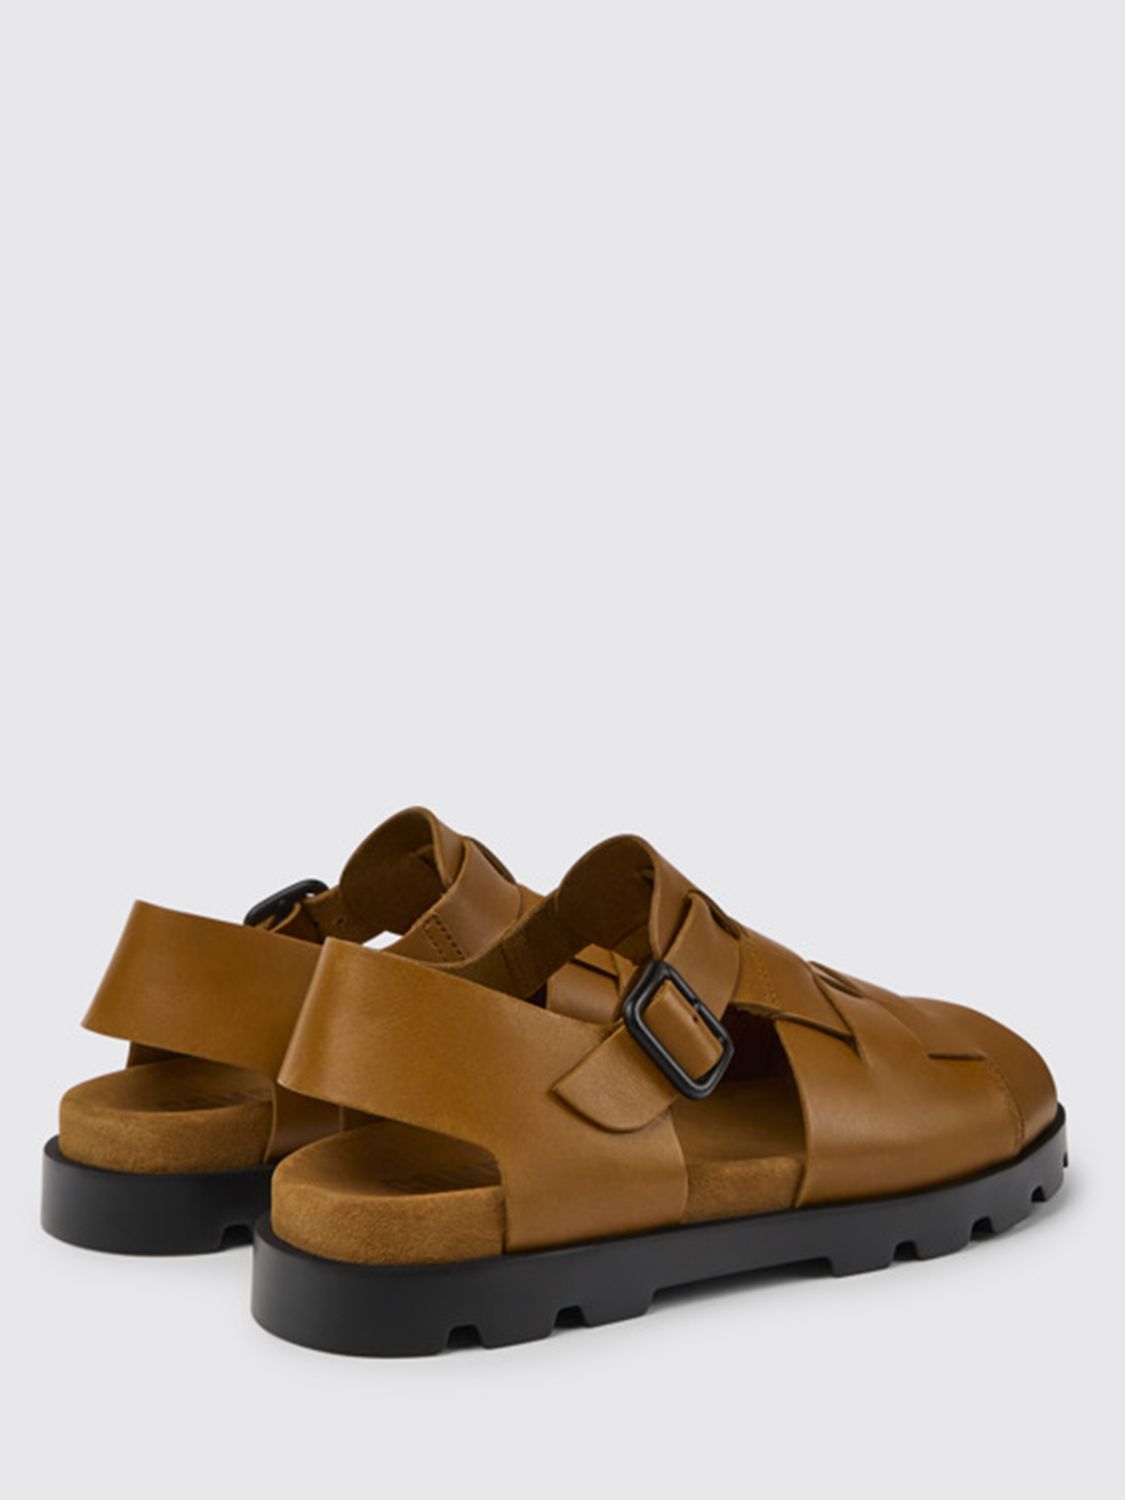 Wens Onderscheid Verkeerd CAMPER: Brutus sandals in calfskin | Sandals Camper Men Brown | Sandals  Camper K100778-002 BRUTUS SANDAL GIGLIO.COM